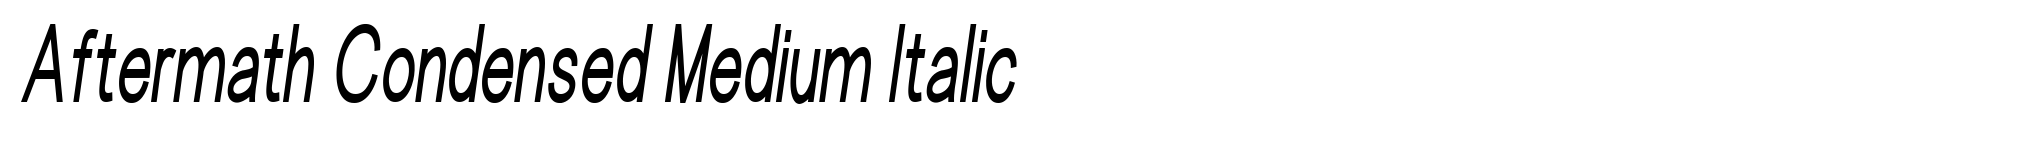 Aftermath Condensed Medium Italic image